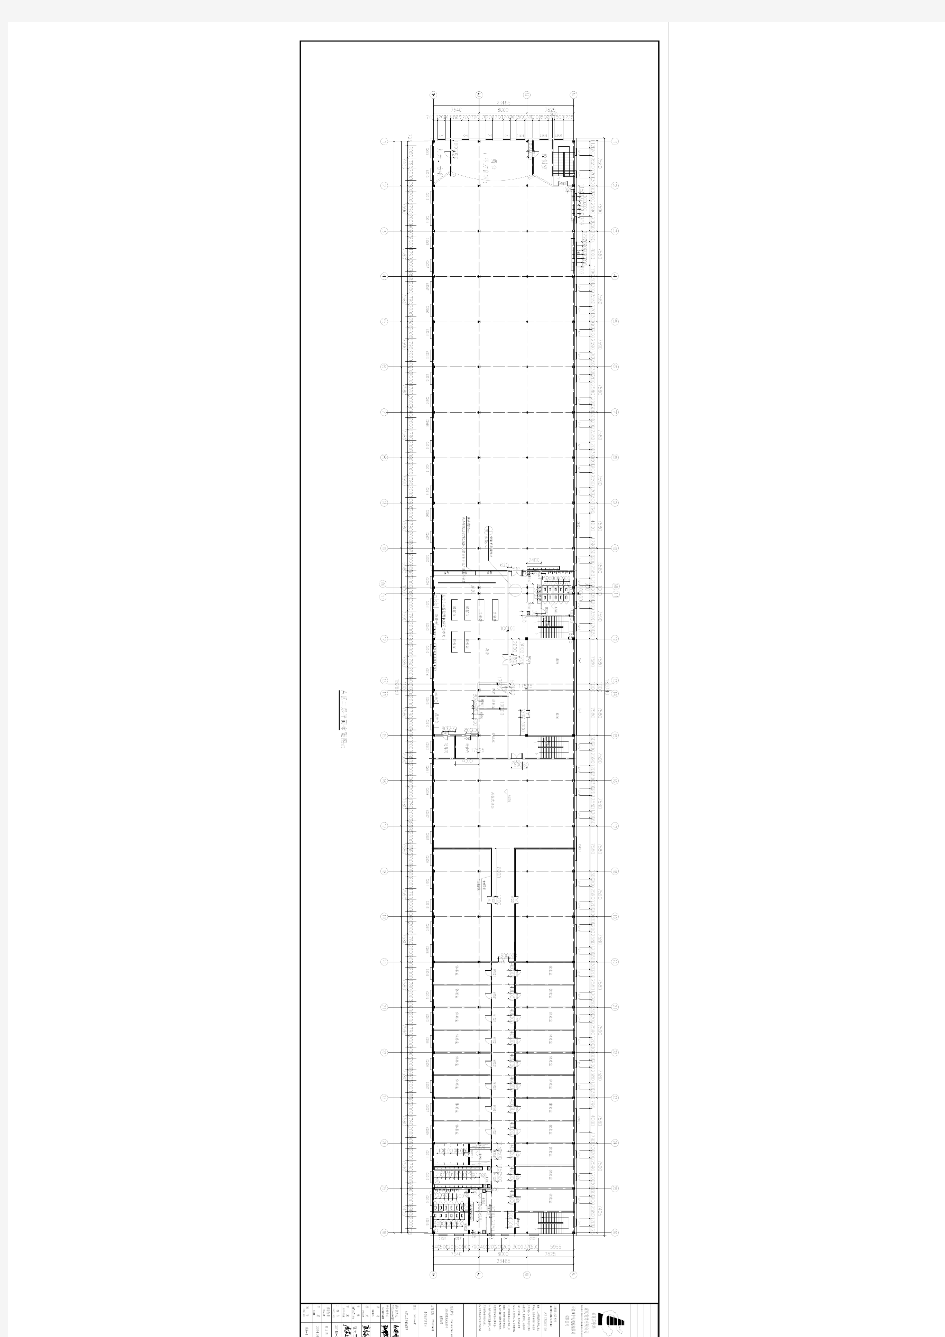 河北喜德来家具实业有限公司扩建项目采暖施工图A区二层平面布置图